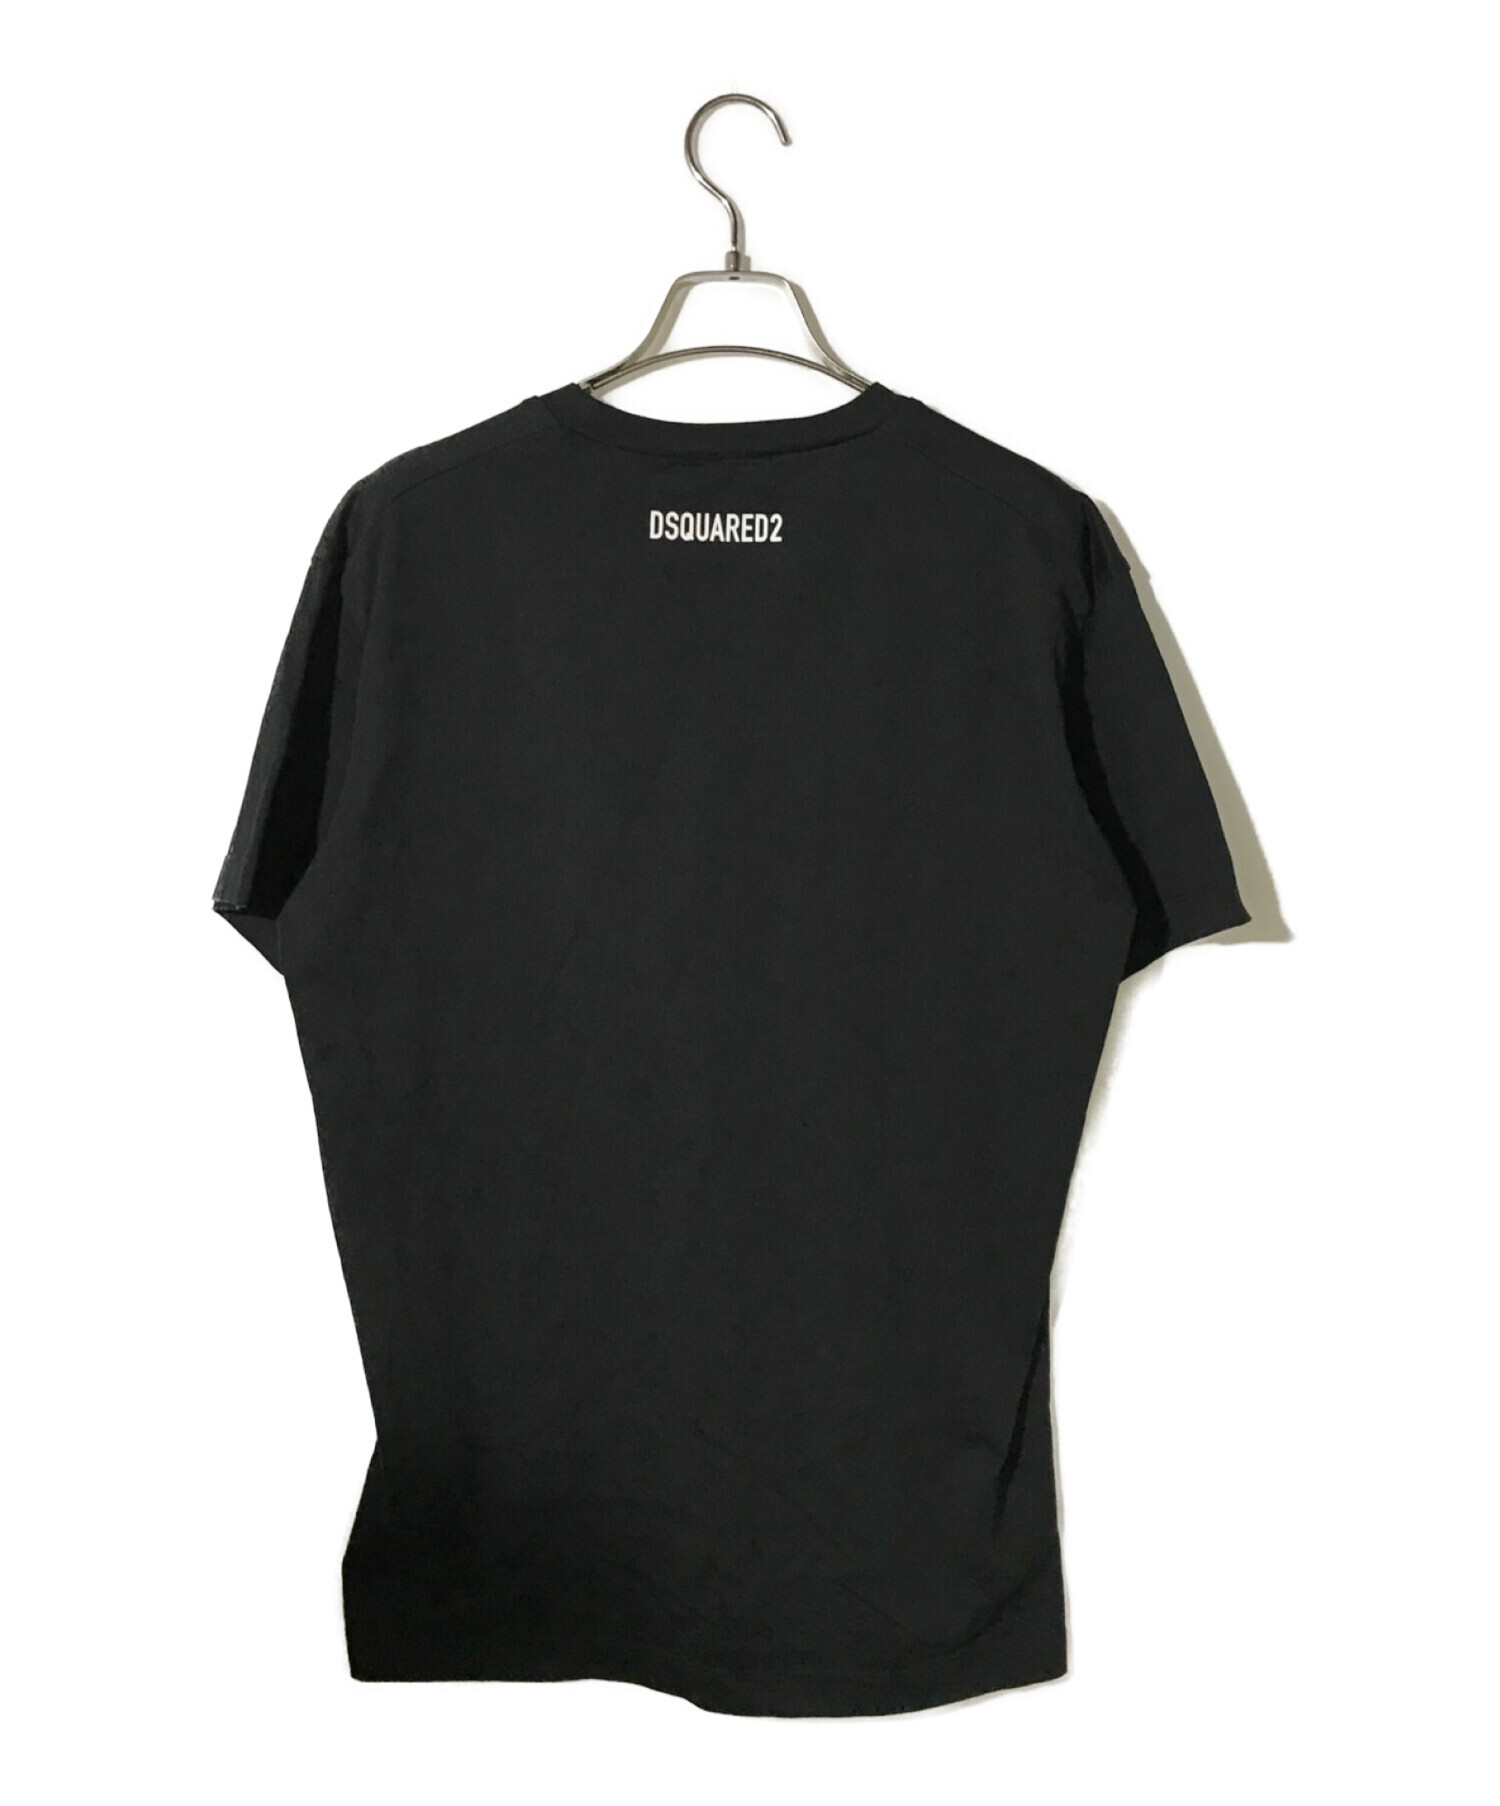 DSQUARED2 (ディースクエアード) ミラーロゴプリントTシャツ ブラック サイズ:M